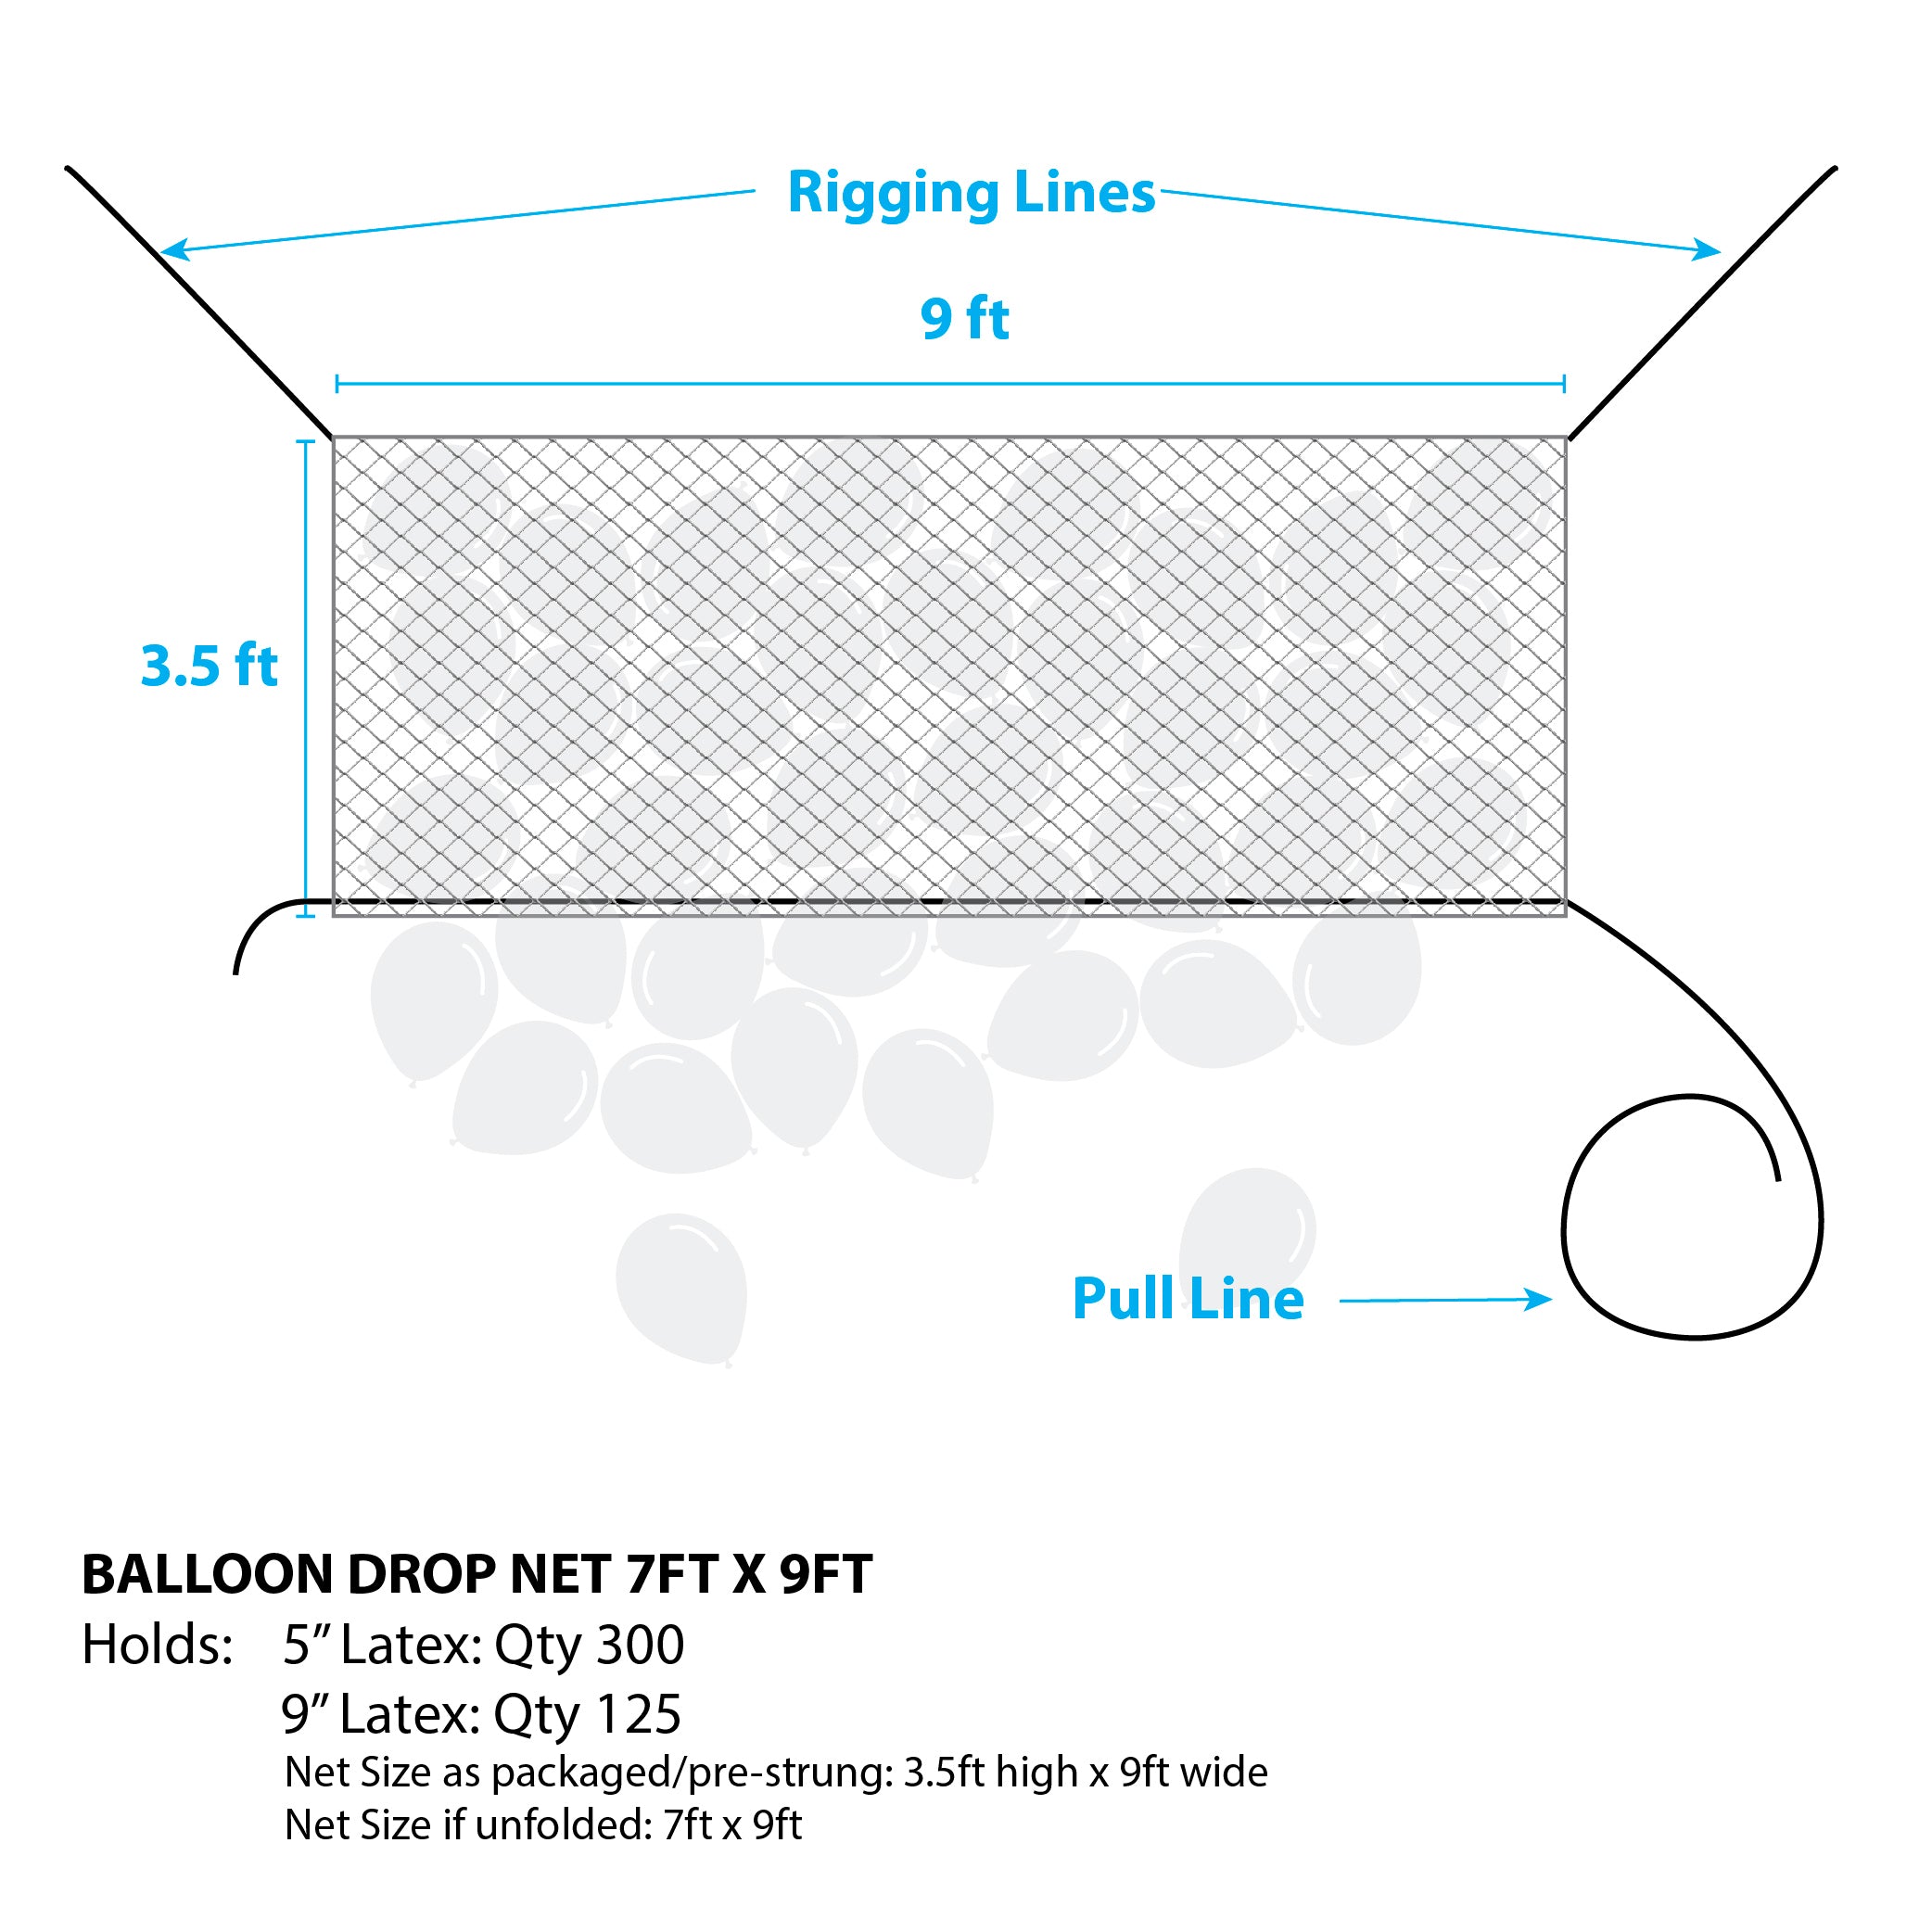 Balloon Drop Net - 7Ft X 9Ft